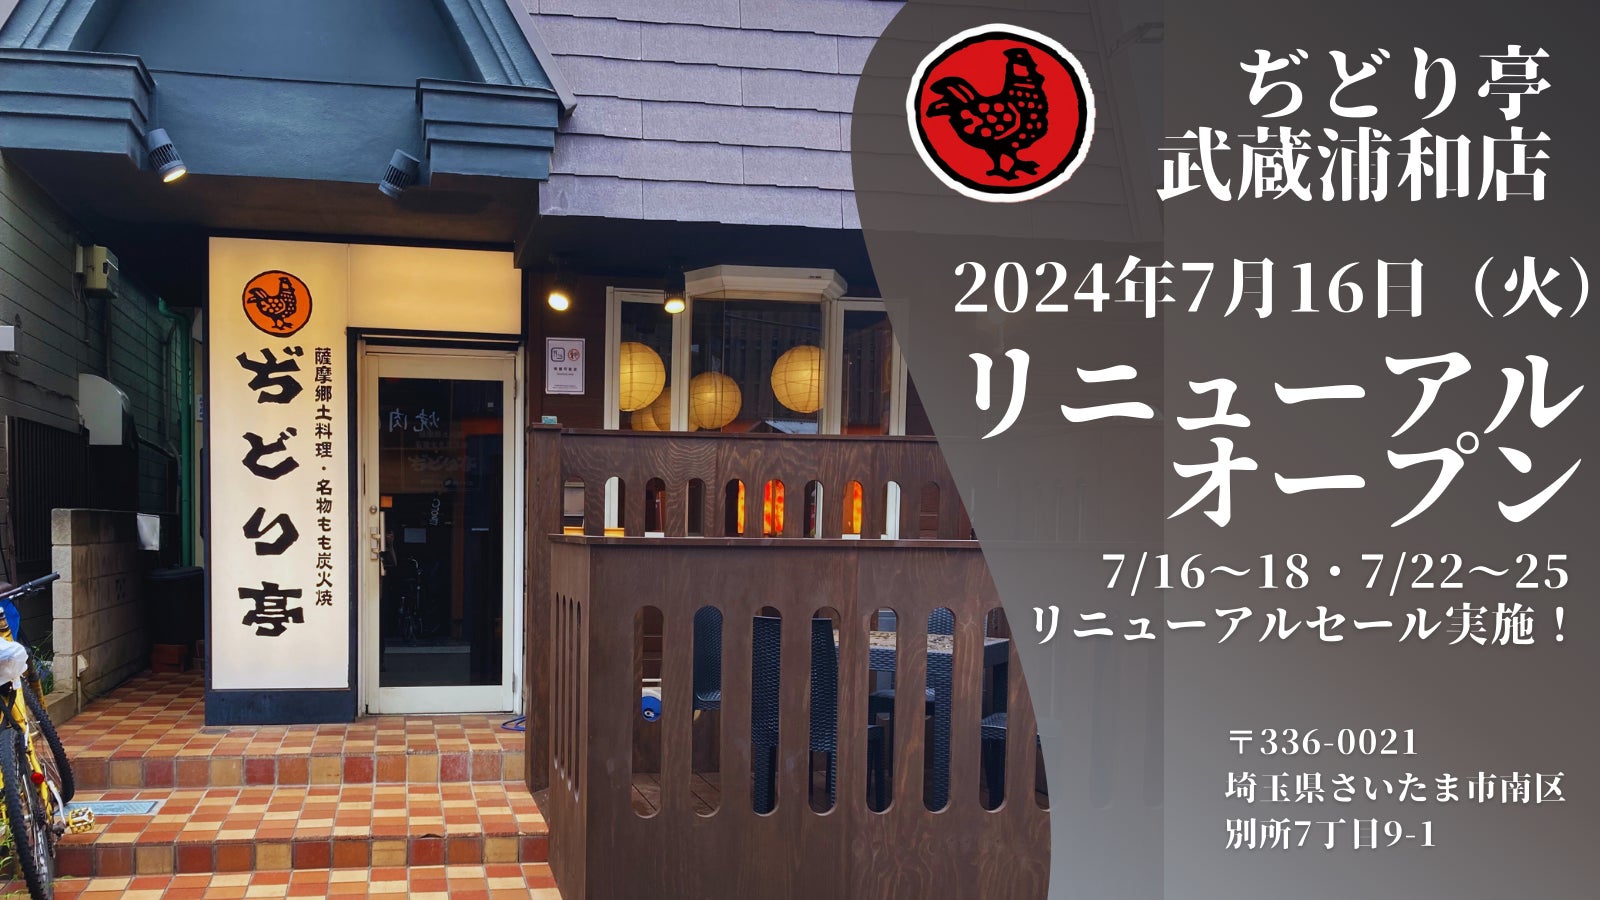 日本最大級といわれる“カレーの街”神田で
「神田カレー街食べ歩きスタンプラリー2024」が8月1日開幕！
今年は「リラックマ」、「キン肉マン」とコラボが決定